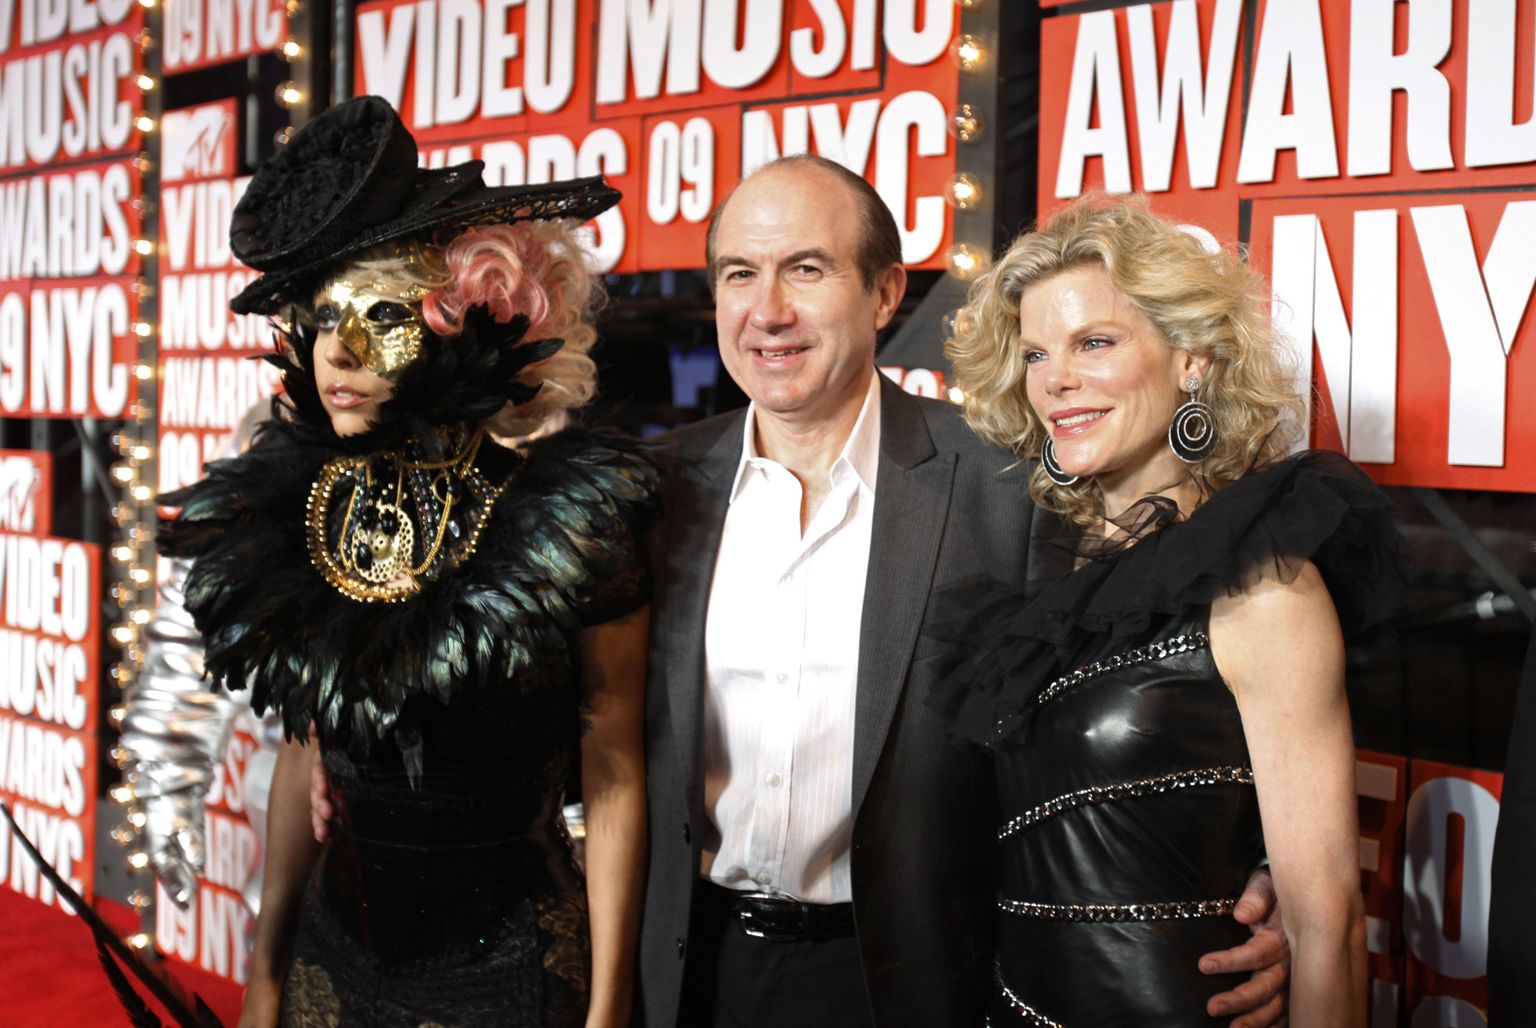 Viacomi juht Philippe Dauman Lady Ga-Ga (vasakul) ning abikaasa Deborahga MTV muusikaauhindade jagamisel. Dauman oli eelmisel aastal S&P 500 ettevõtete kõige kõrgemini tasustatud juht.